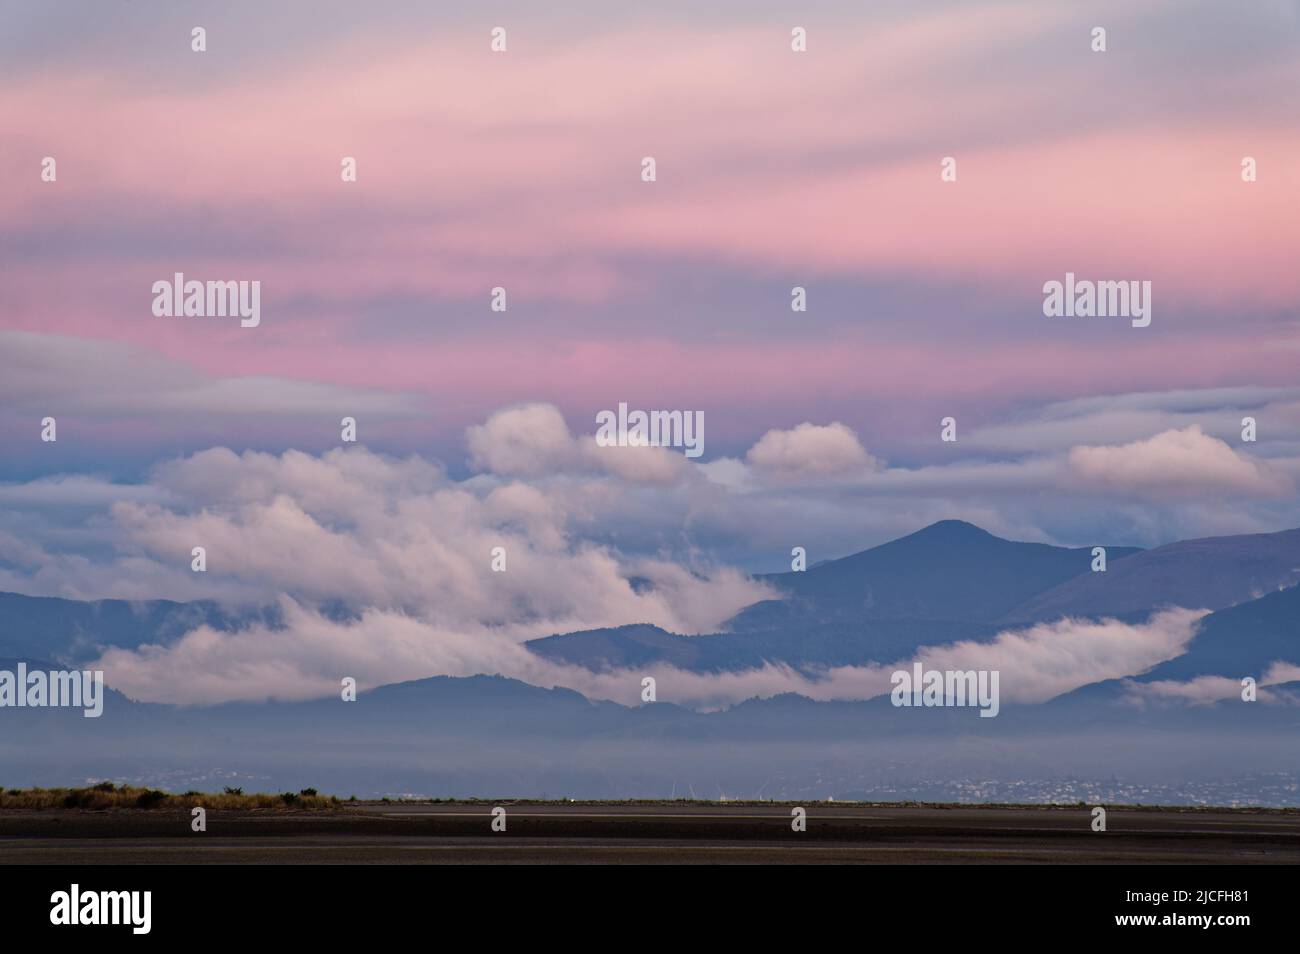 Las nubes se asientan en las colinas detrás de Nelson con el rosa temprano de la puesta de sol coloreando el cielo. Foto de stock